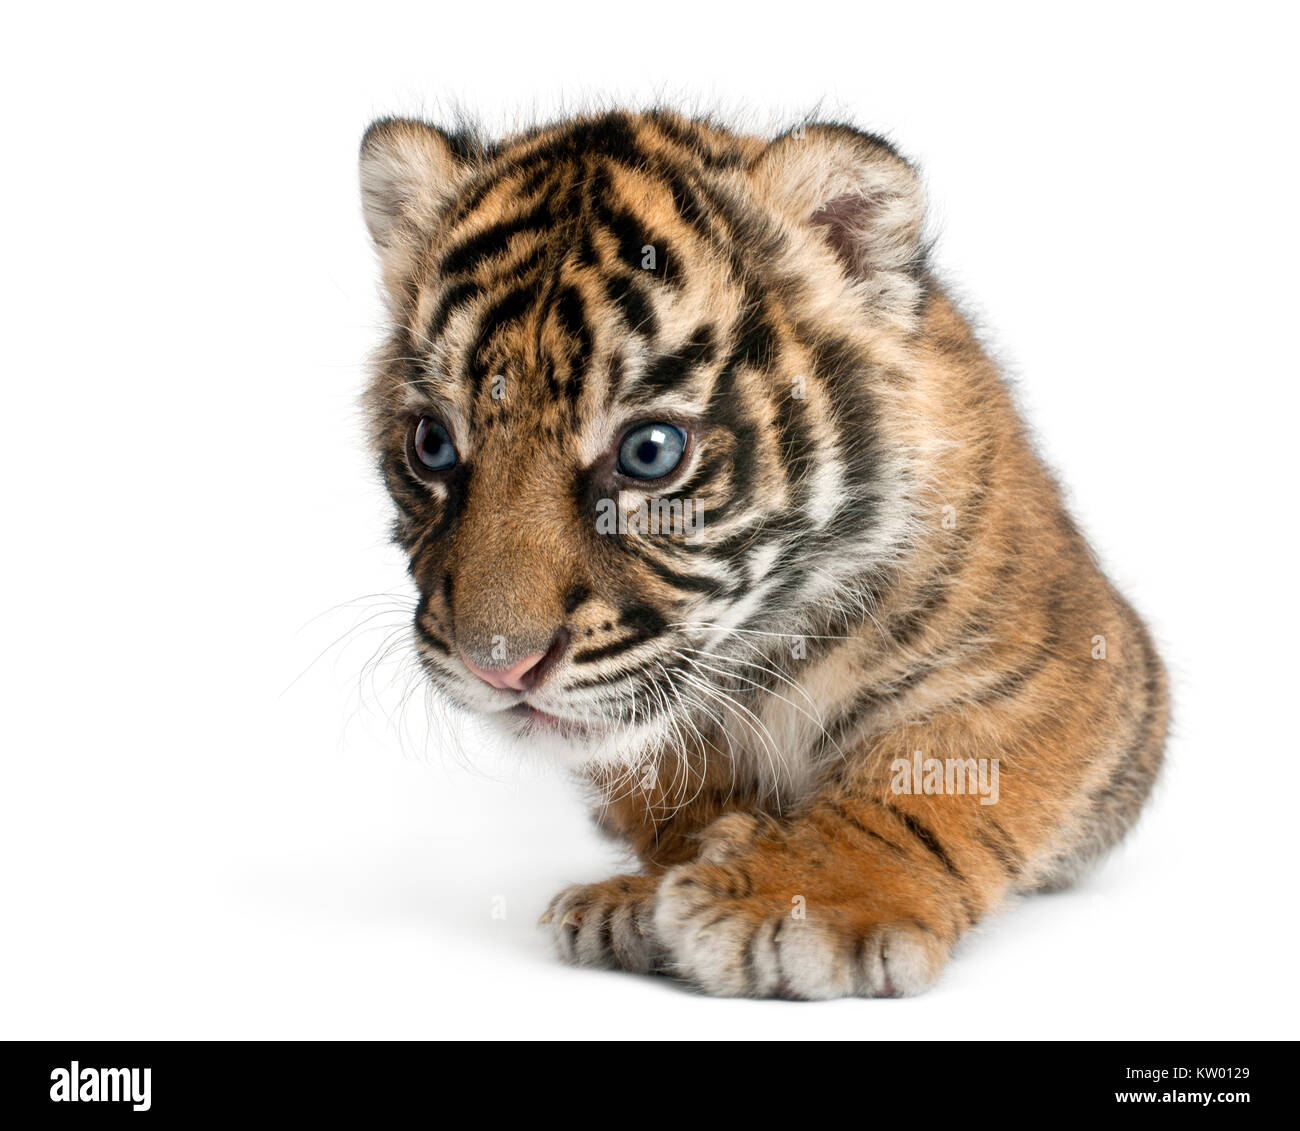 Sumatran Tiger cub, Panthera tigris sumatrae, 3 weeks old, in front of white background Stock Photo